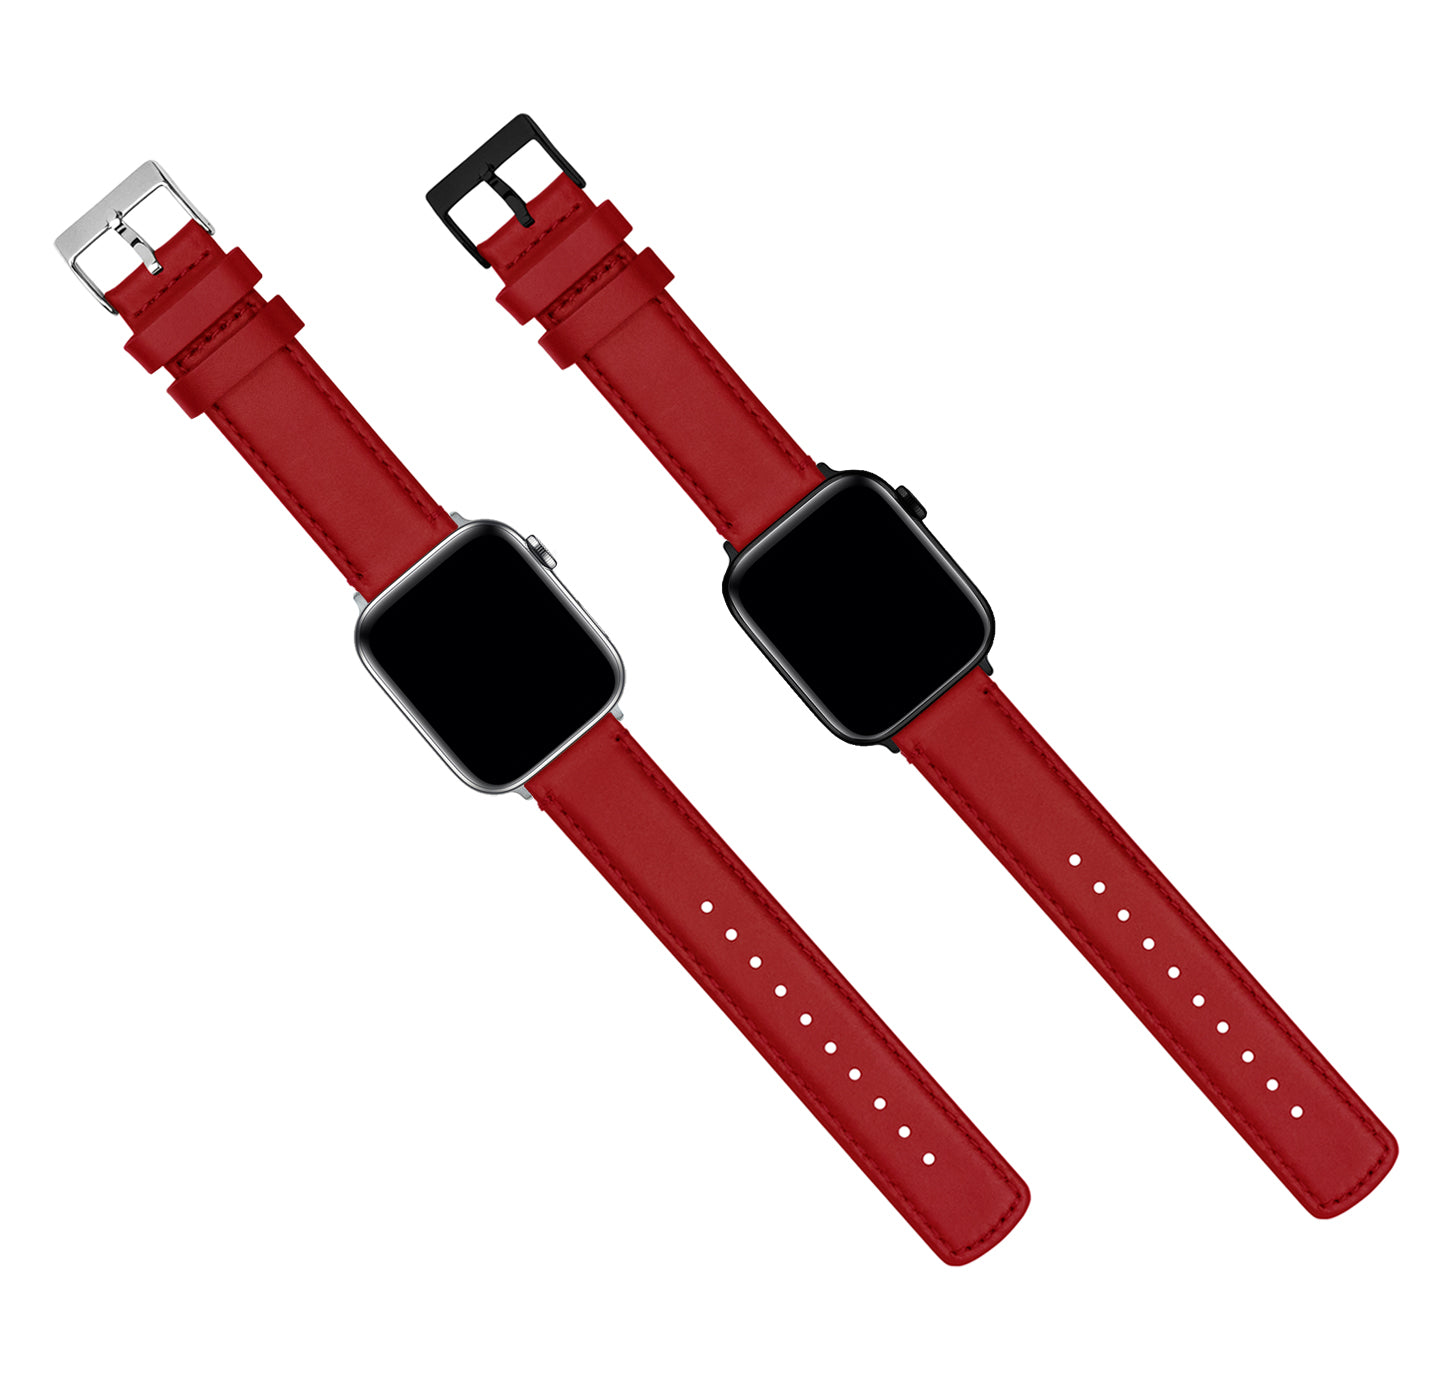 Handdn Red Calfskin Apple Watch Band – Waves Texture